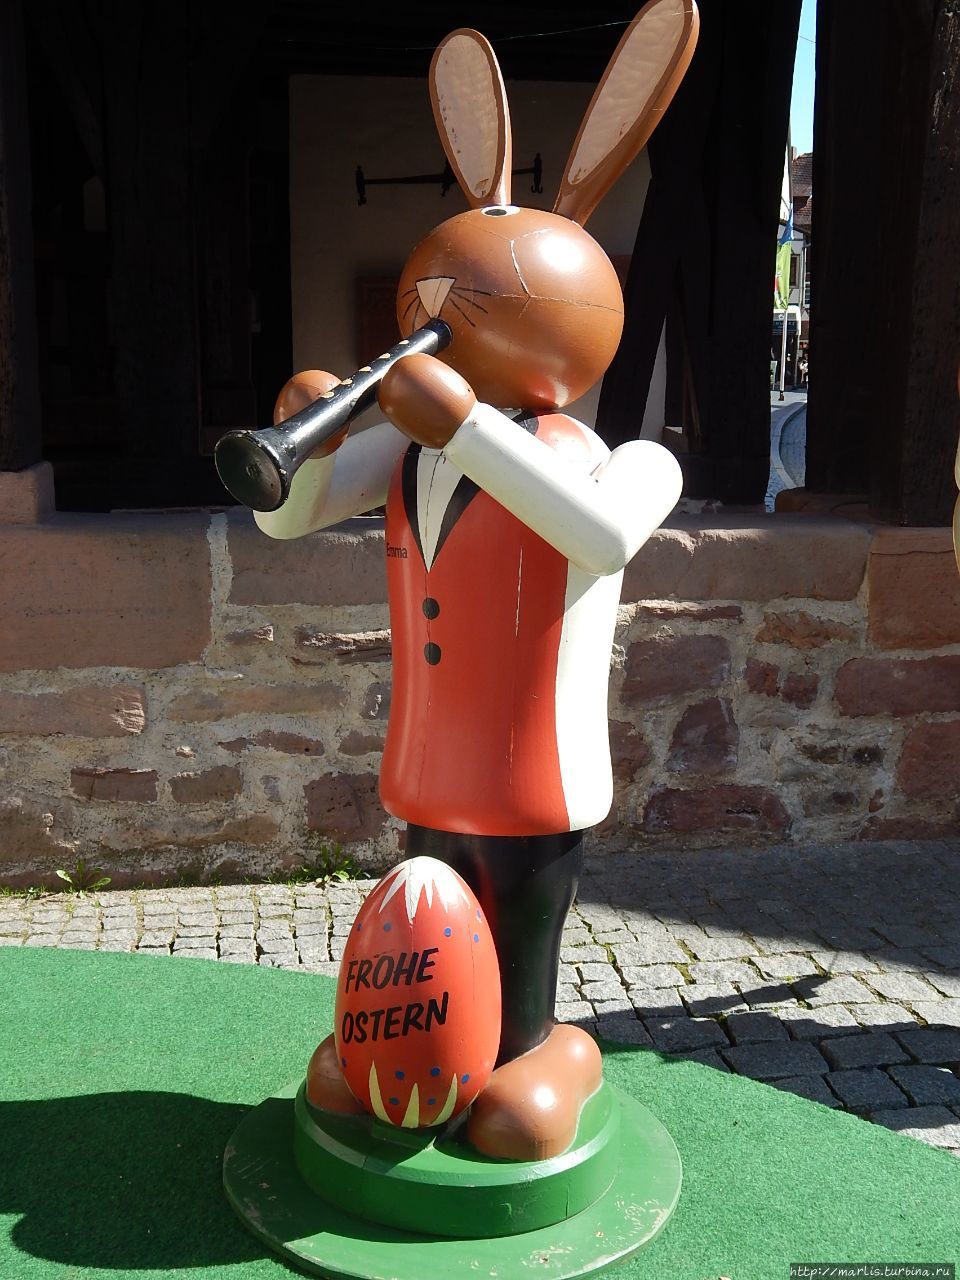 Остерхазе — заяц, несущий яйца — пасхальный символ Михельштадт, Германия